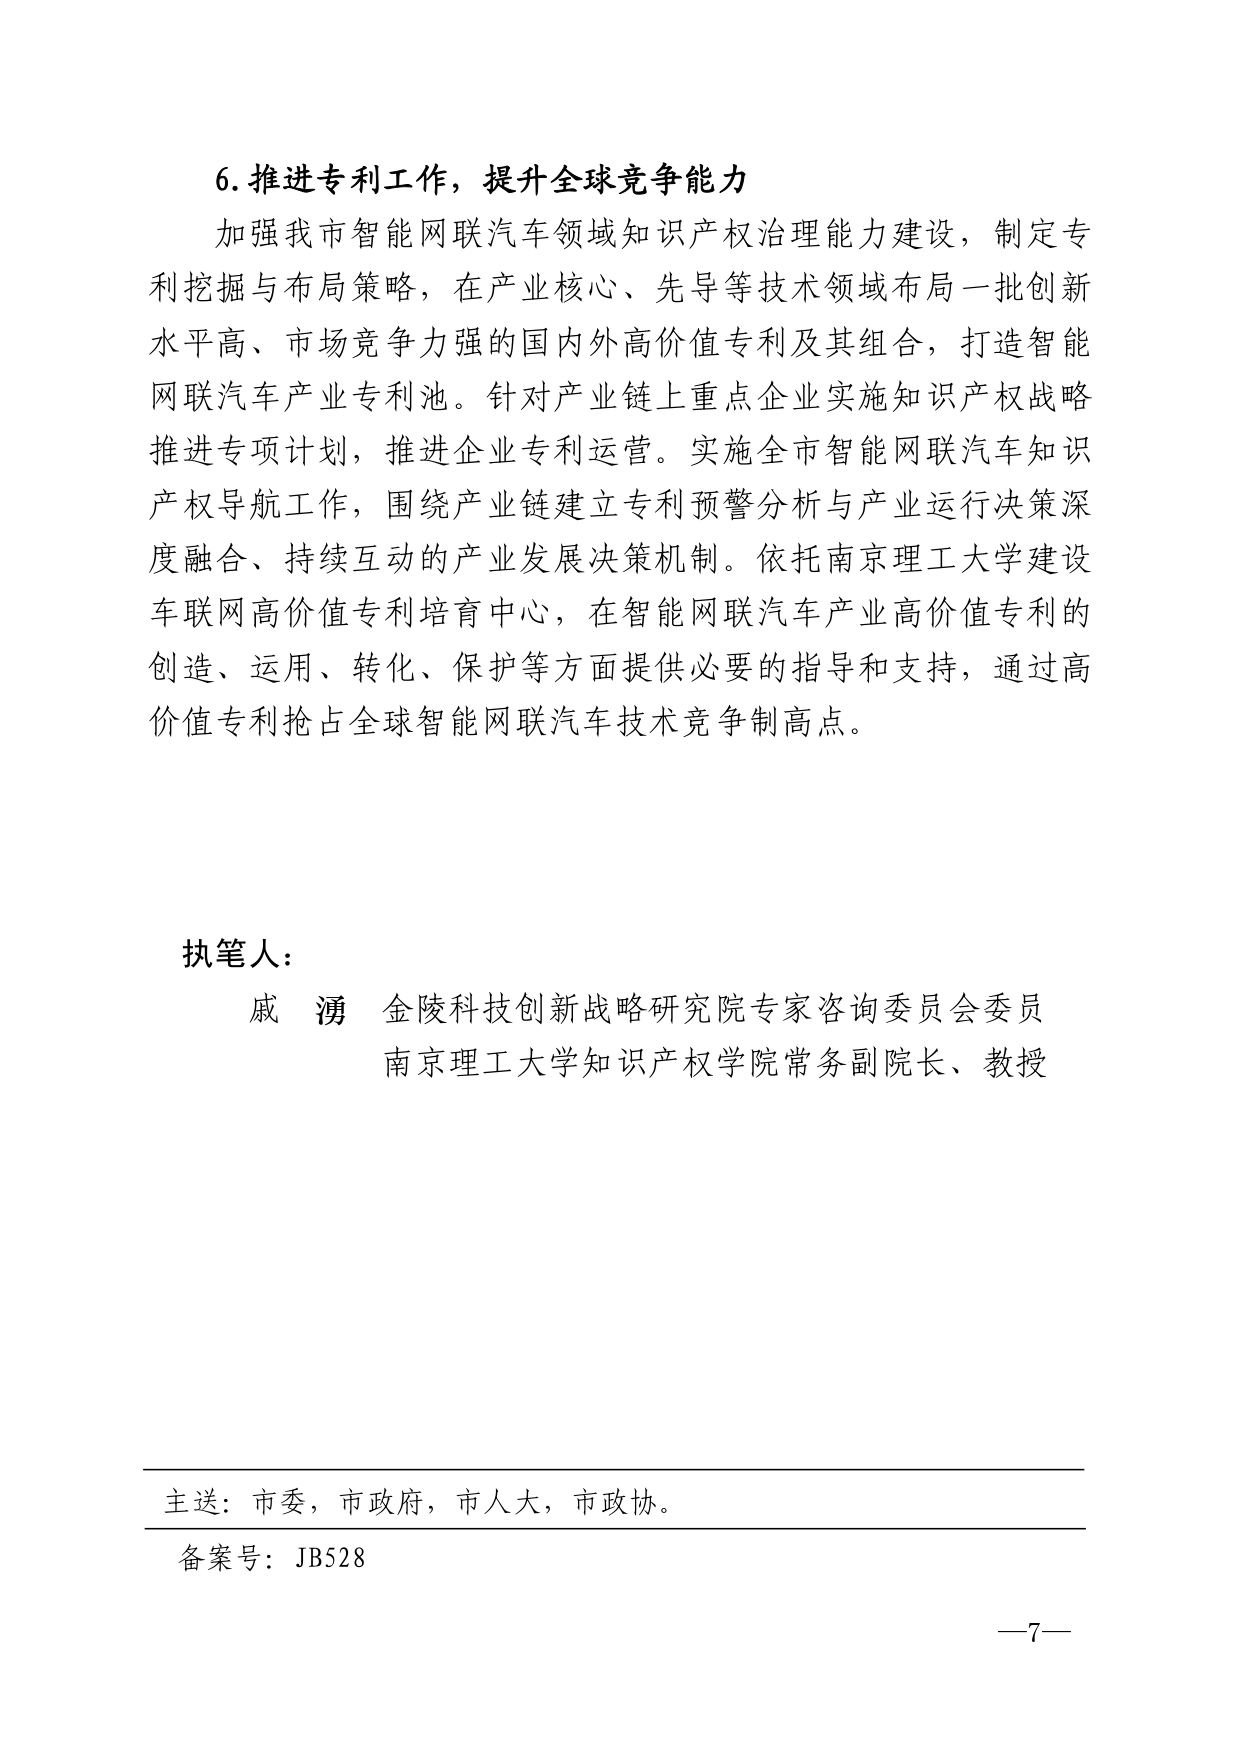 2021年第4期（关于南京智能网联汽车产业高质量发展建议）_page-0007.jpg